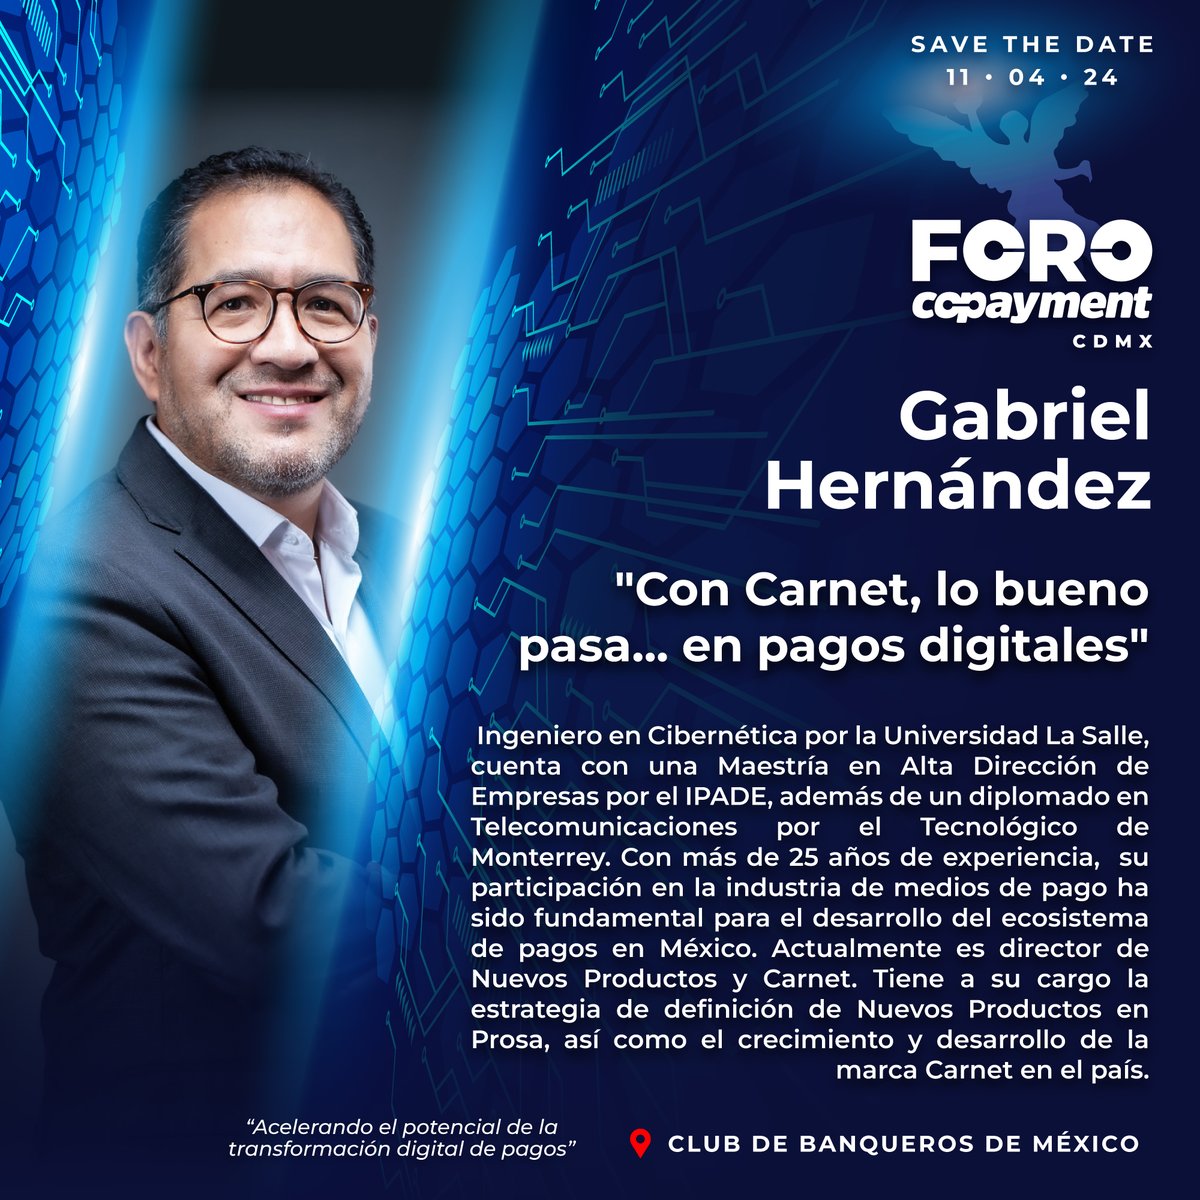 GABRIEL HERNÁNDEZ, estará compartiendo con nosotros el tema: 'Con Carnet, lo bueno pasa... en pagos digitales' 📆 11 de Abril, 2024 📍 Club de Banqueros de México ➡️ Regístrate: foro.copayment.com.mx/#/signup #forocopaymentcdmx @CarnetMx